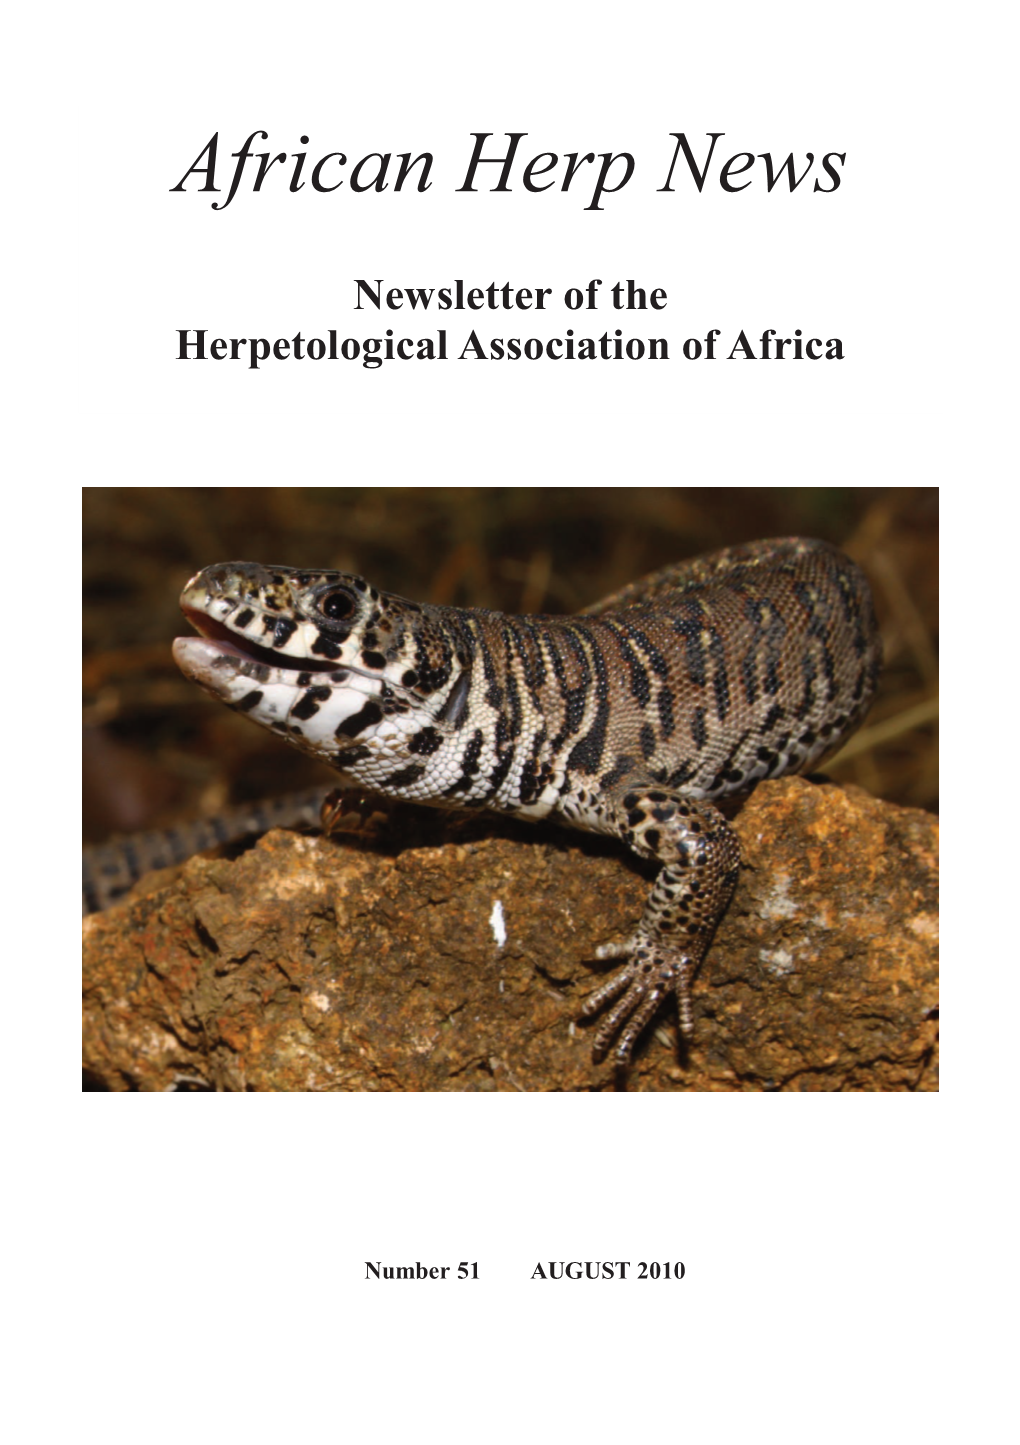 African Herp News